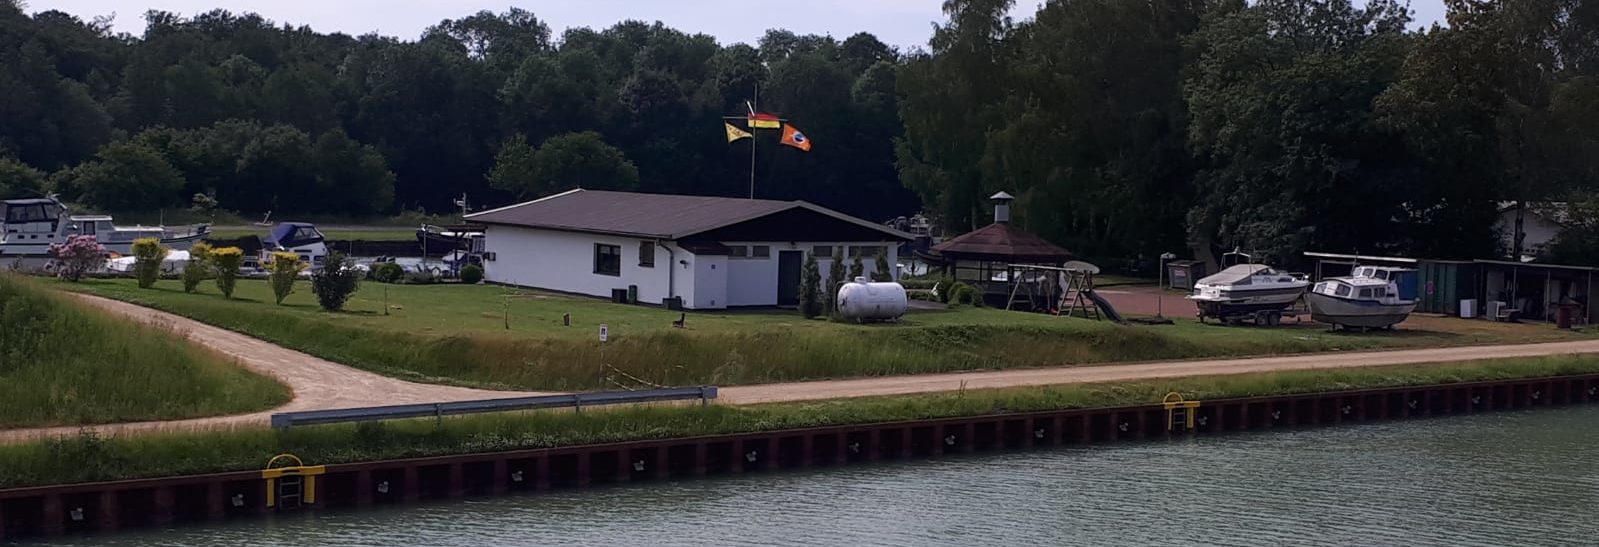 Motor-Yacht-Club Kanalstadt Datteln e.V.